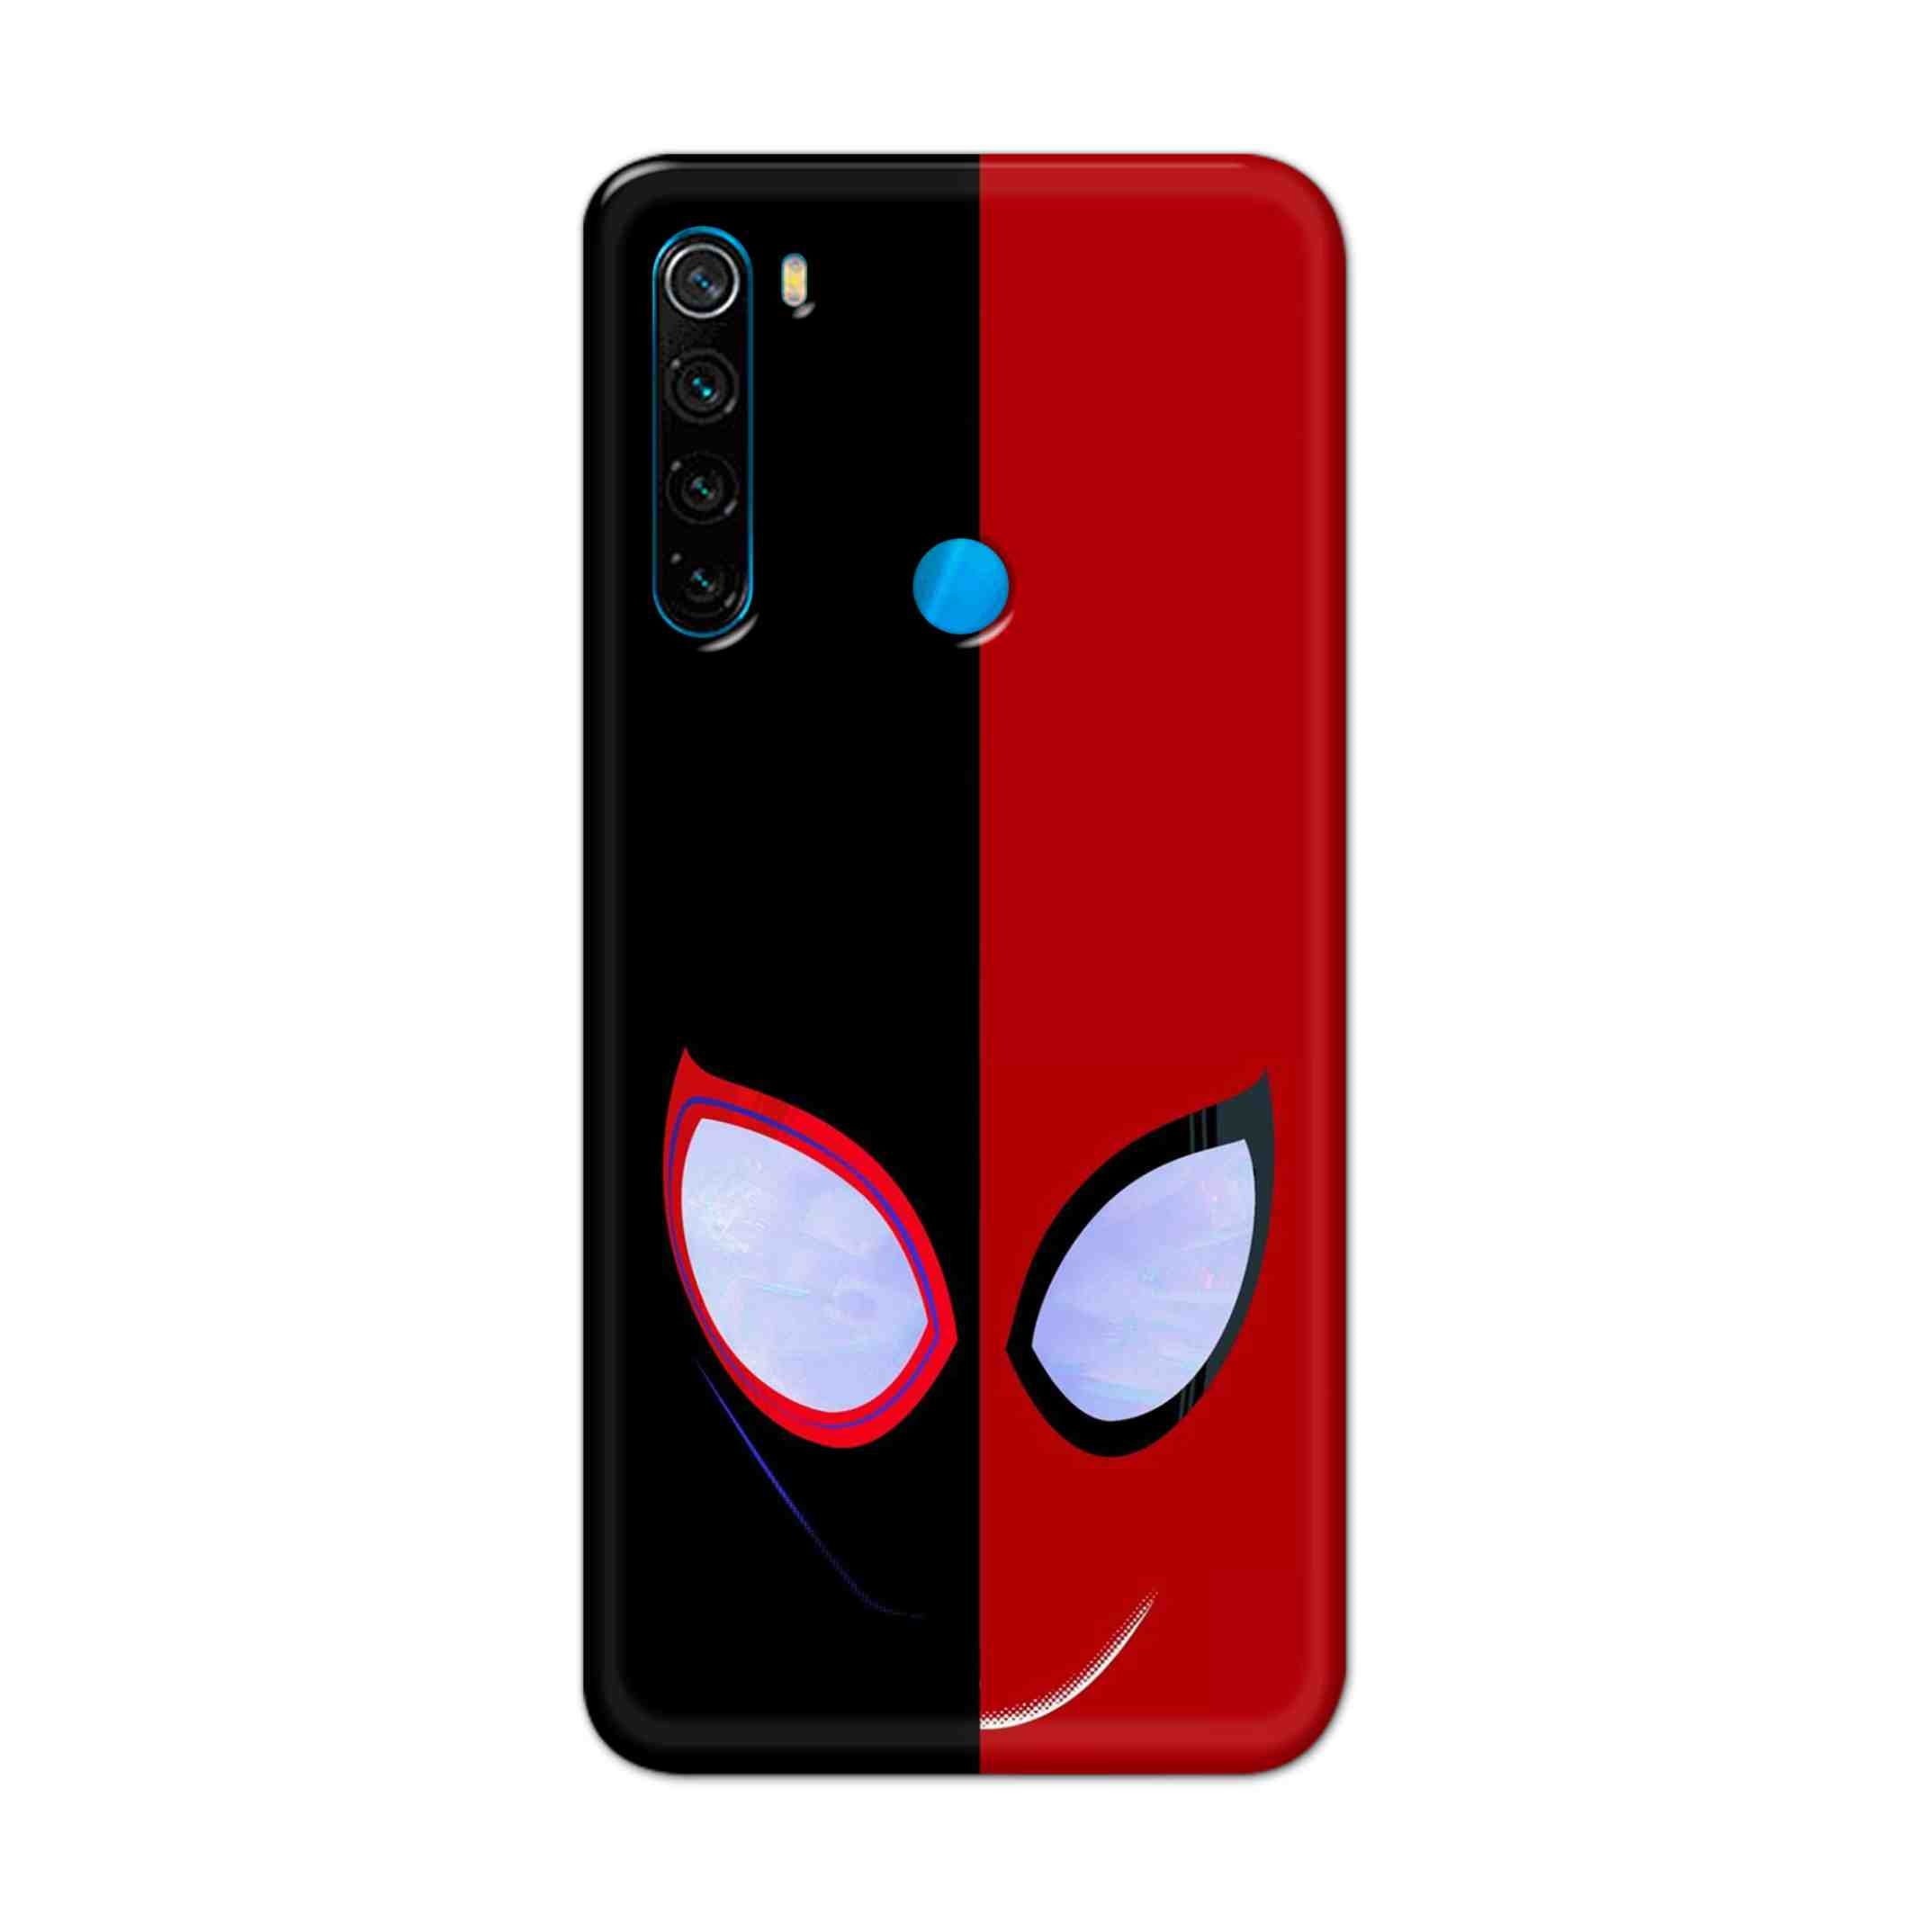 Buy Venom Vs Spiderman Hard Back Mobile Phone Case Cover For Xiaomi Redmi Note 8 Online